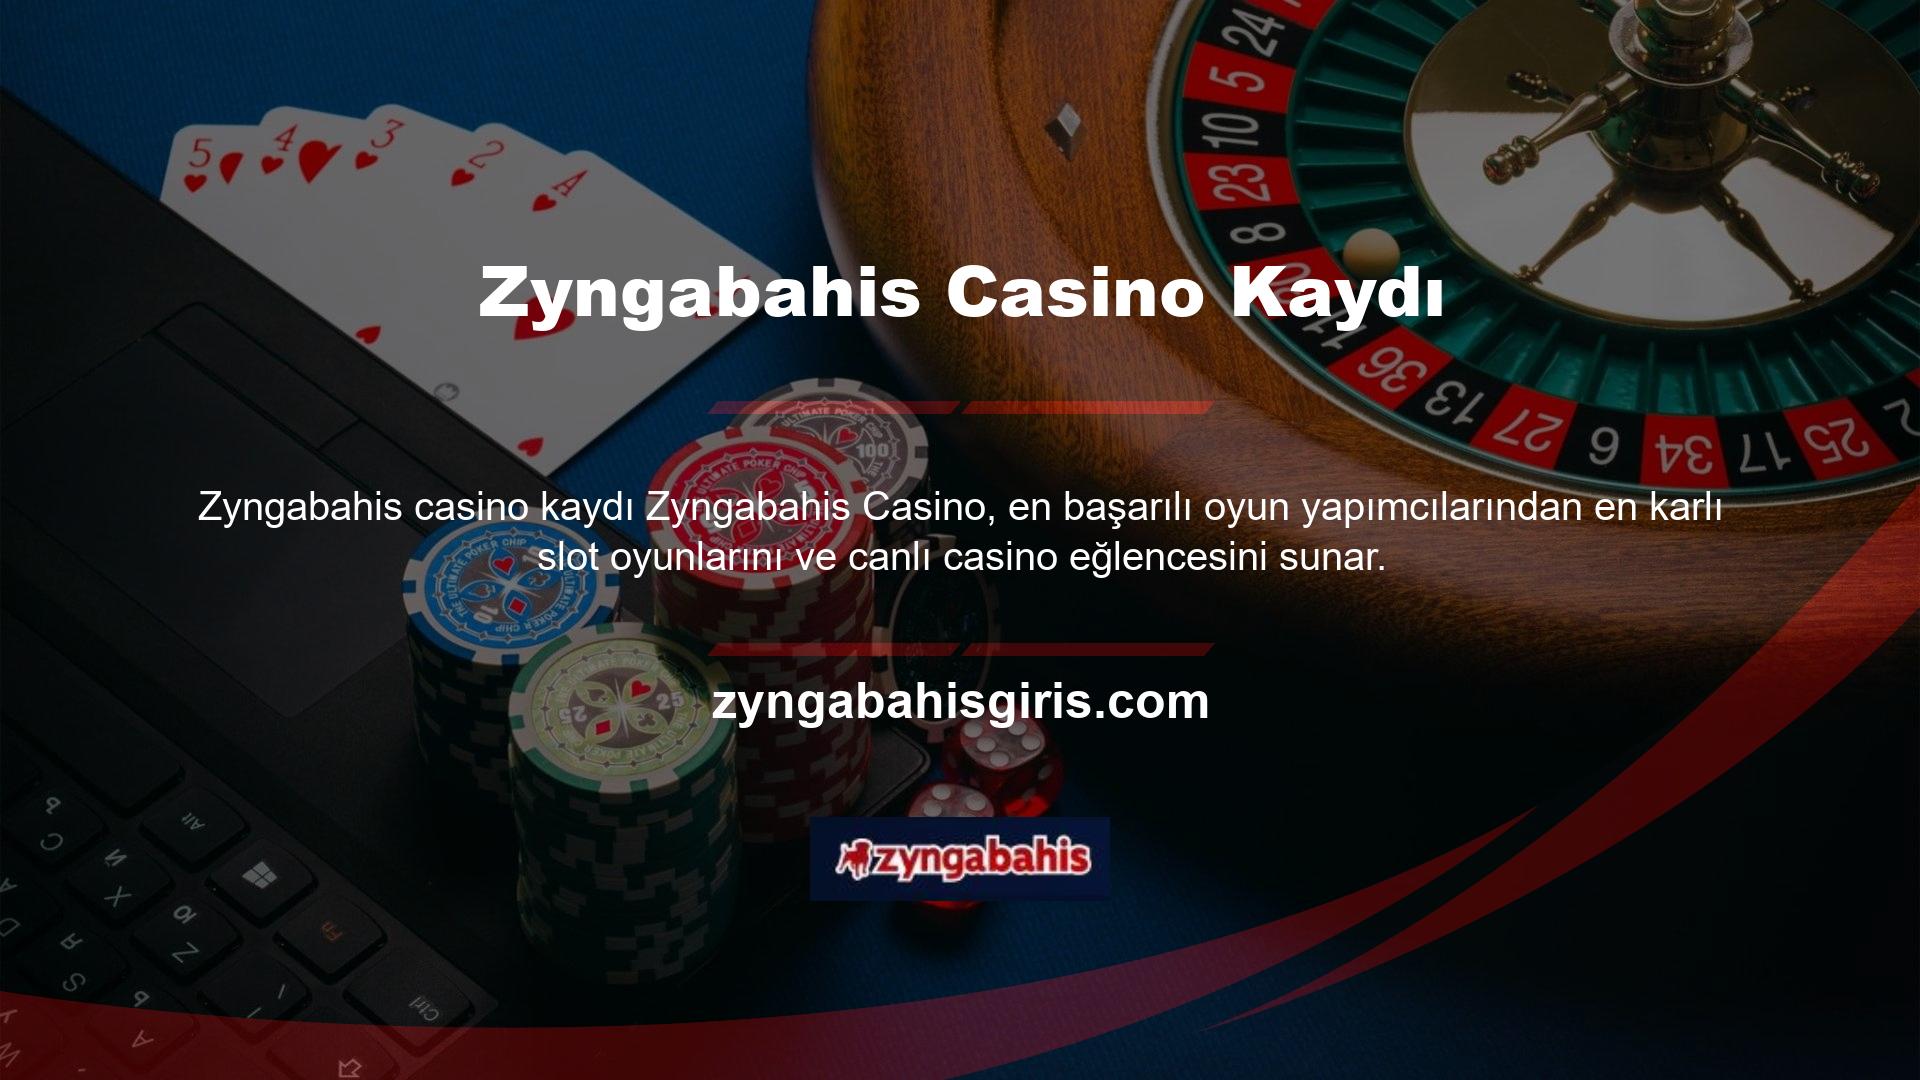 Seçtiğiniz limitler dahilinde profesyonel oyuncular, kaliteli oyunlar ve bahis fırsatları ile Zyngabahis casino sistemine üye olabilirsiniz